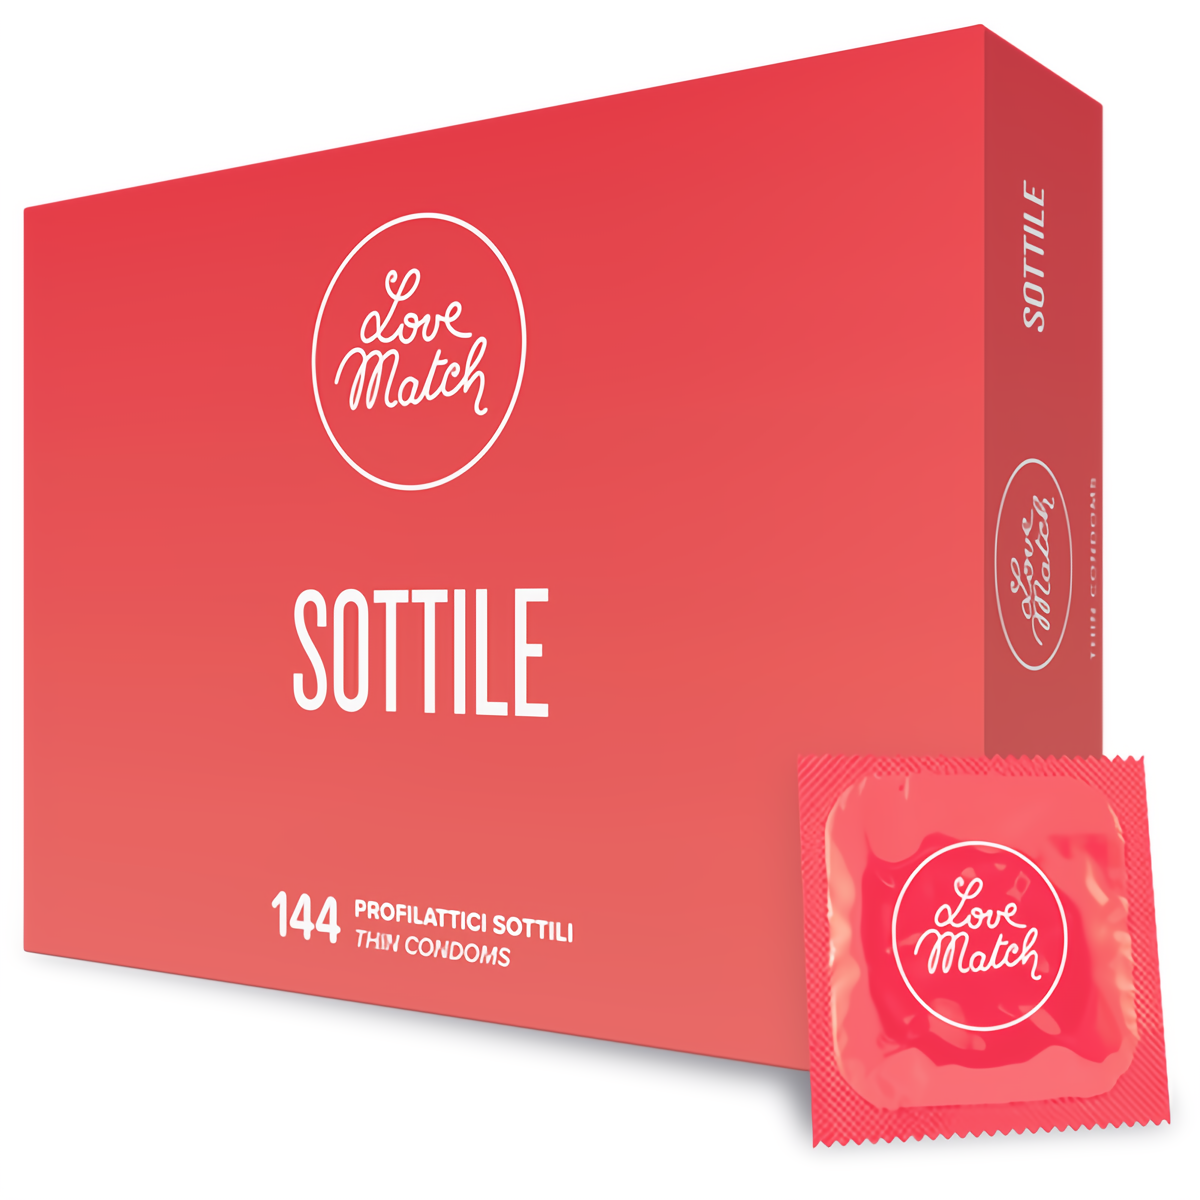 Sottile - Thin Condoms - 144 Pieces